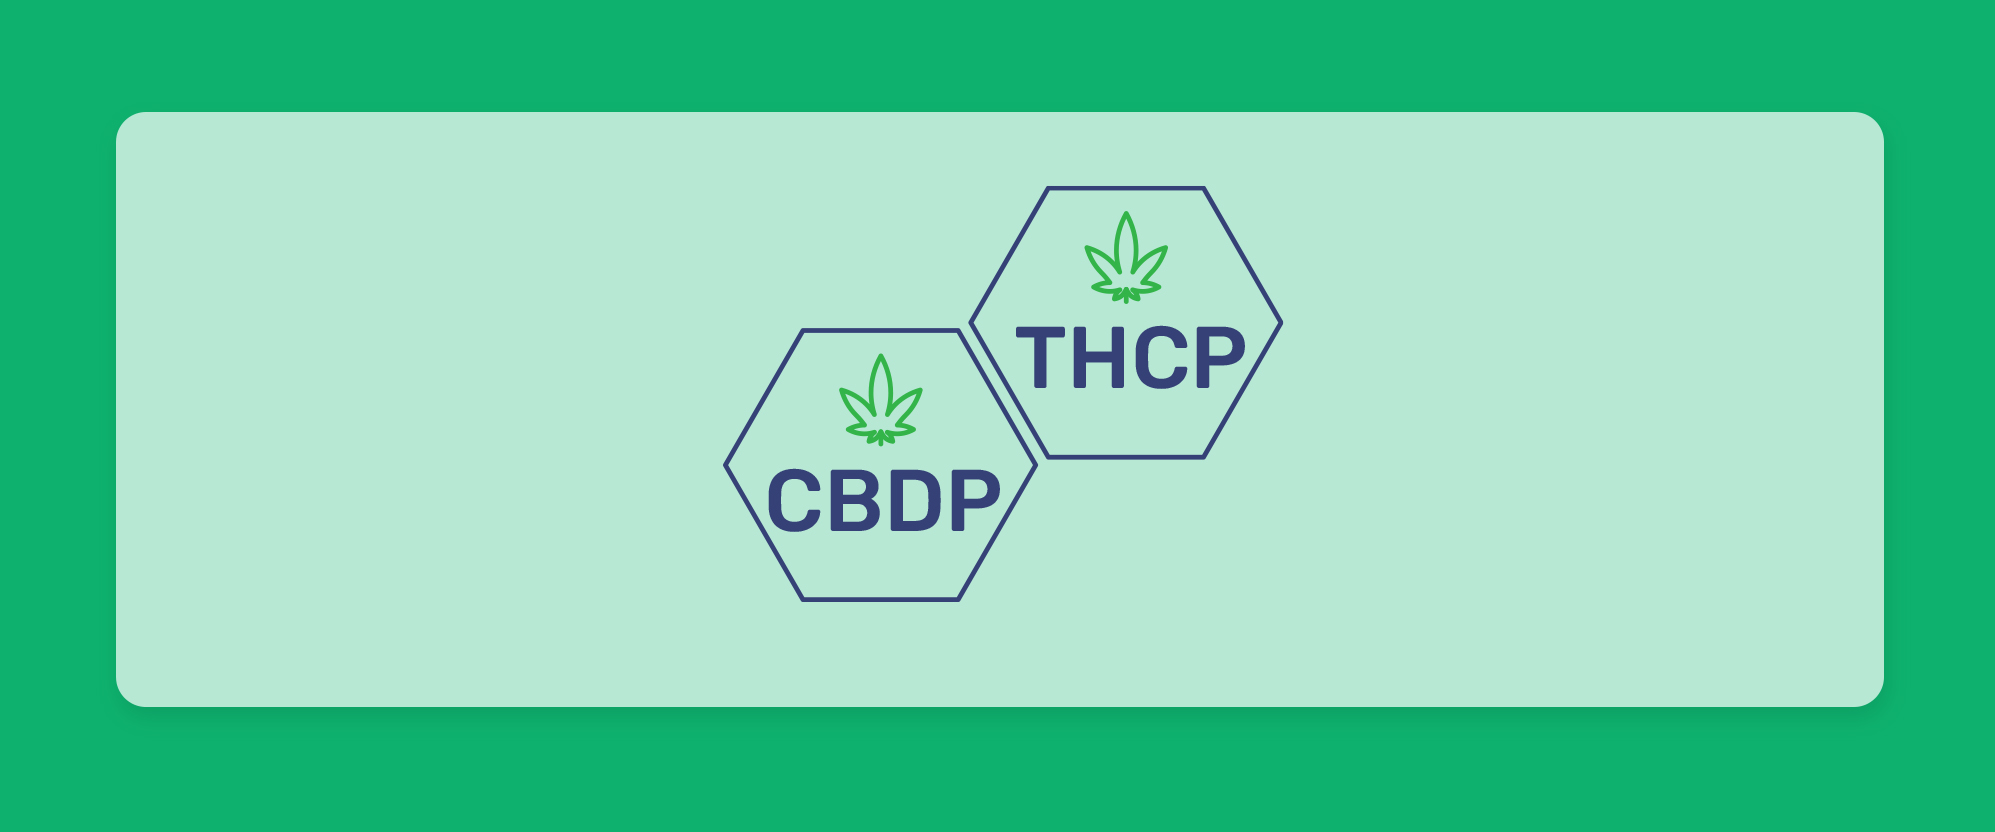 הכירו את הקנבינואידים החדשים: THCP ו-CBDP